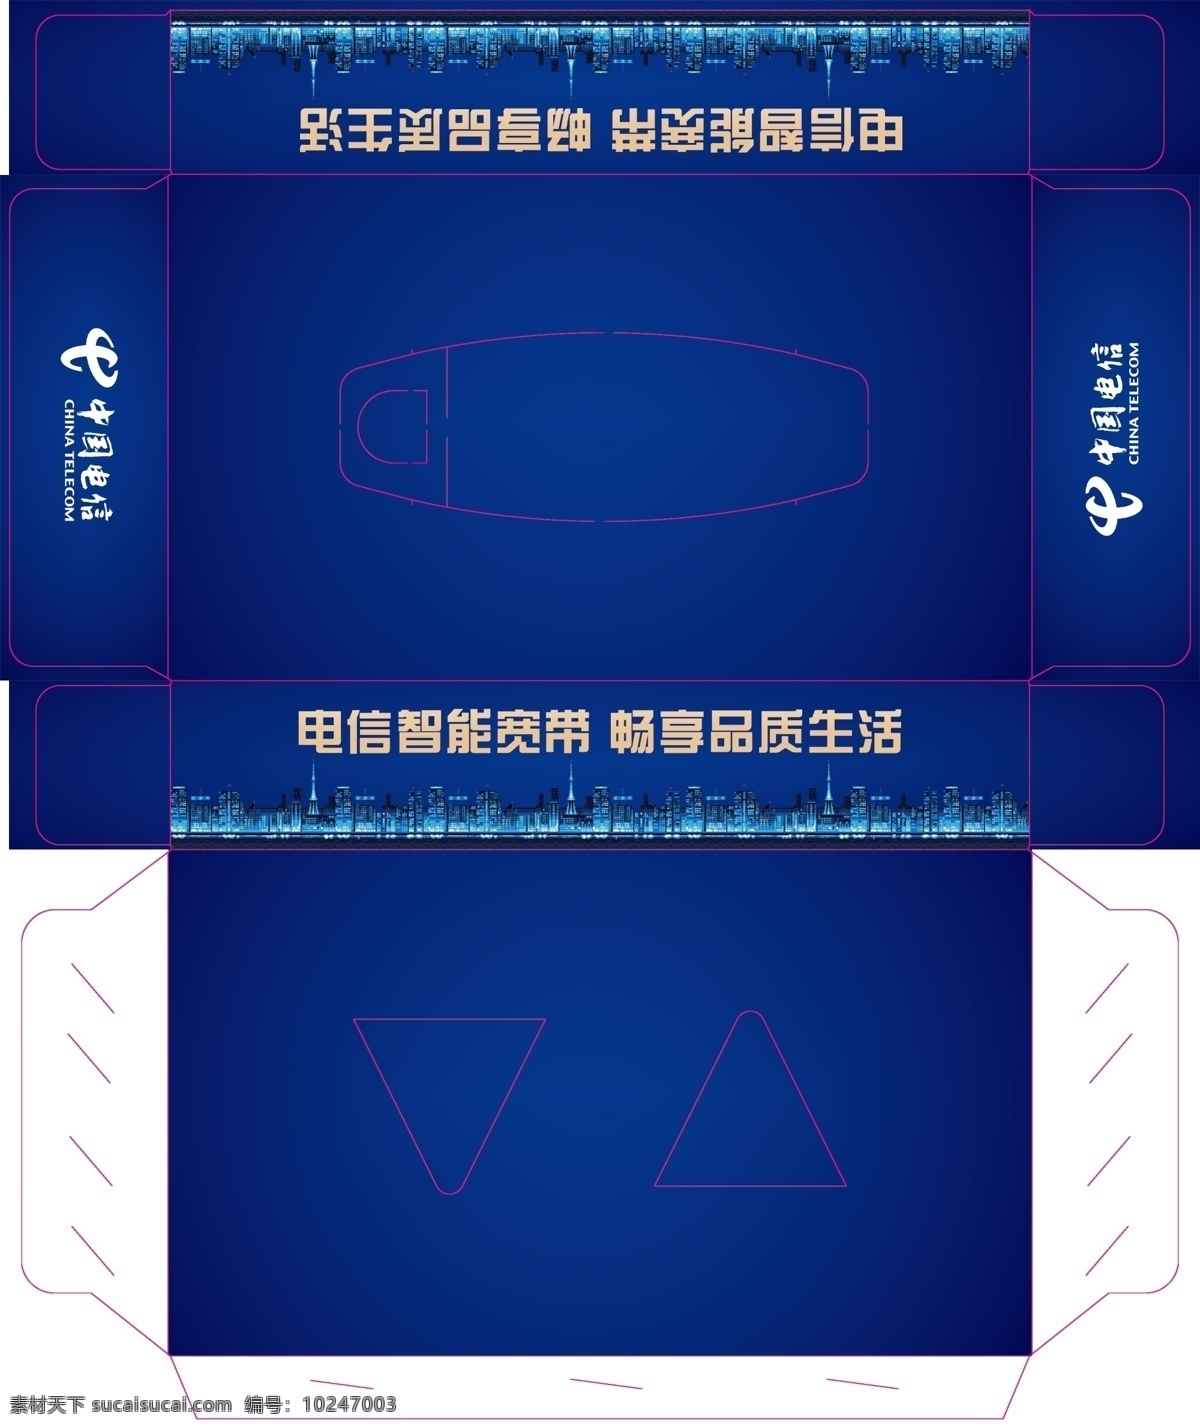 中国电信 抽 纸盒 电信 抽纸盒 蓝色抽纸盒 科技电信 分层